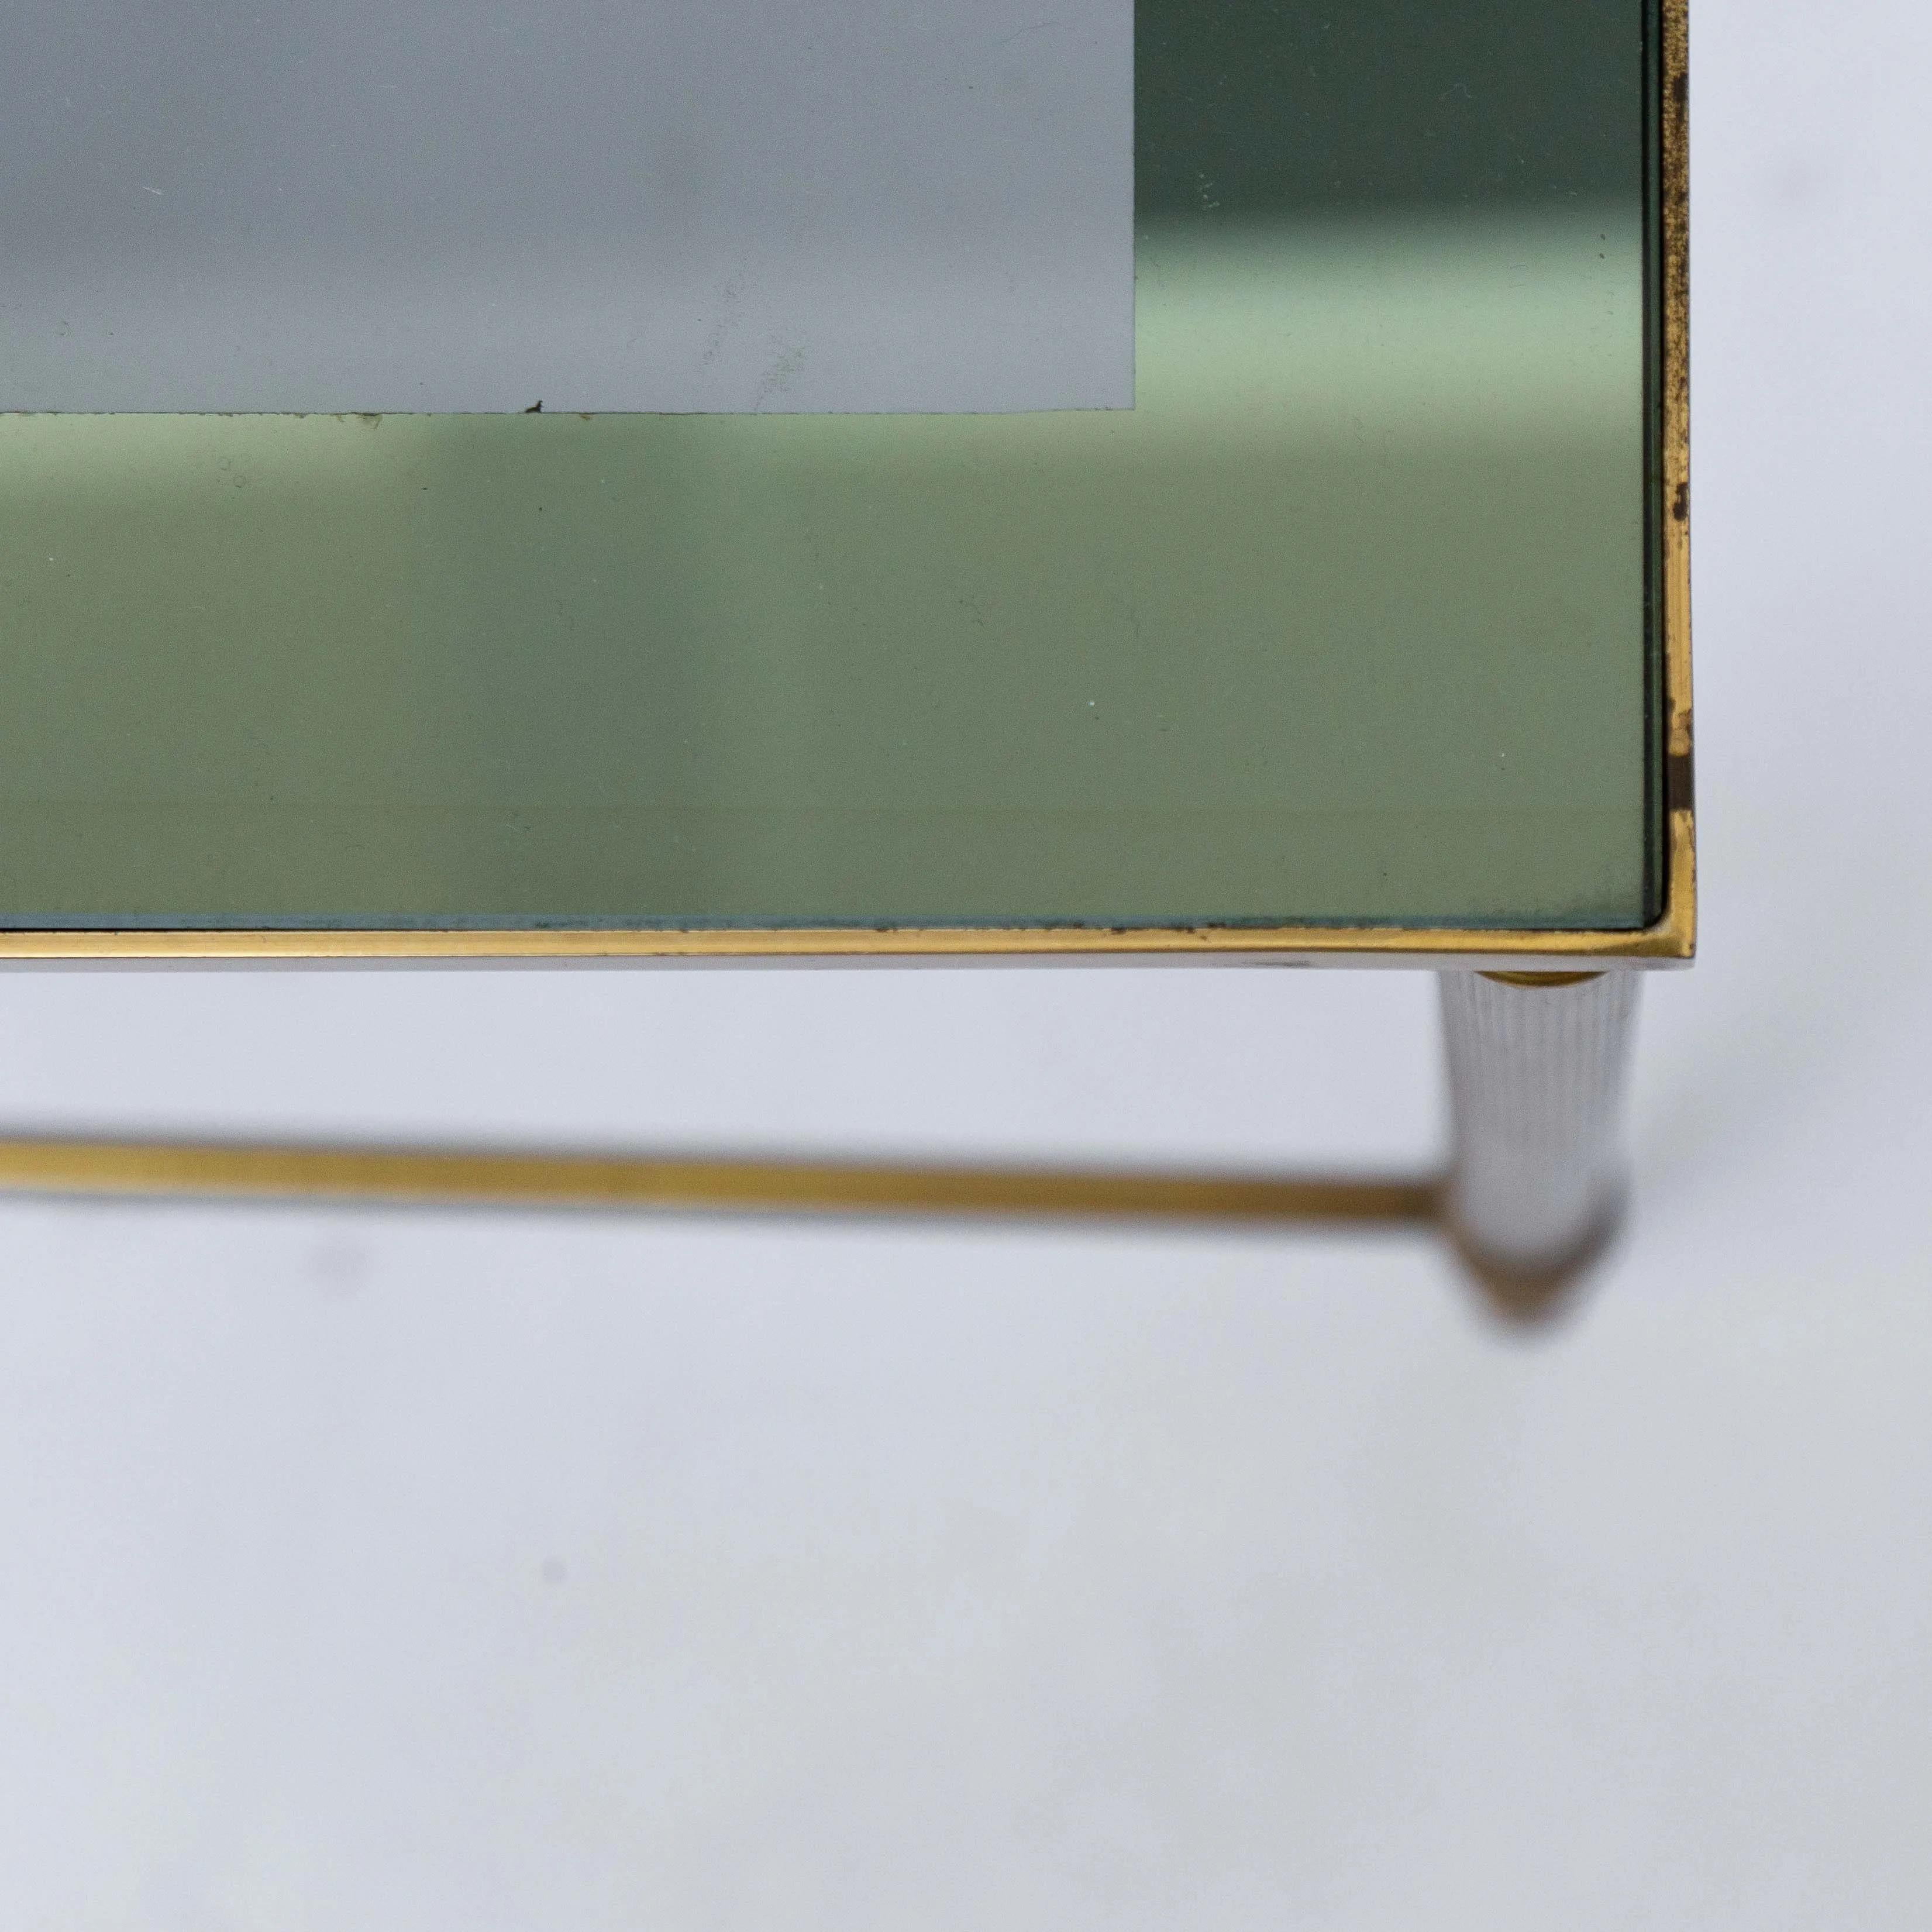 Die verspiegelte Glastischplatte macht diese Tische schick und elegant. Typisch für den Mid-Century Modern Hollywood Regency Stil. Sowohl der Messingrahmen als auch die verspiegelte Glasplatte zeigen eine sehr elegante Patina!

no.1: 38x36x33
no.2: